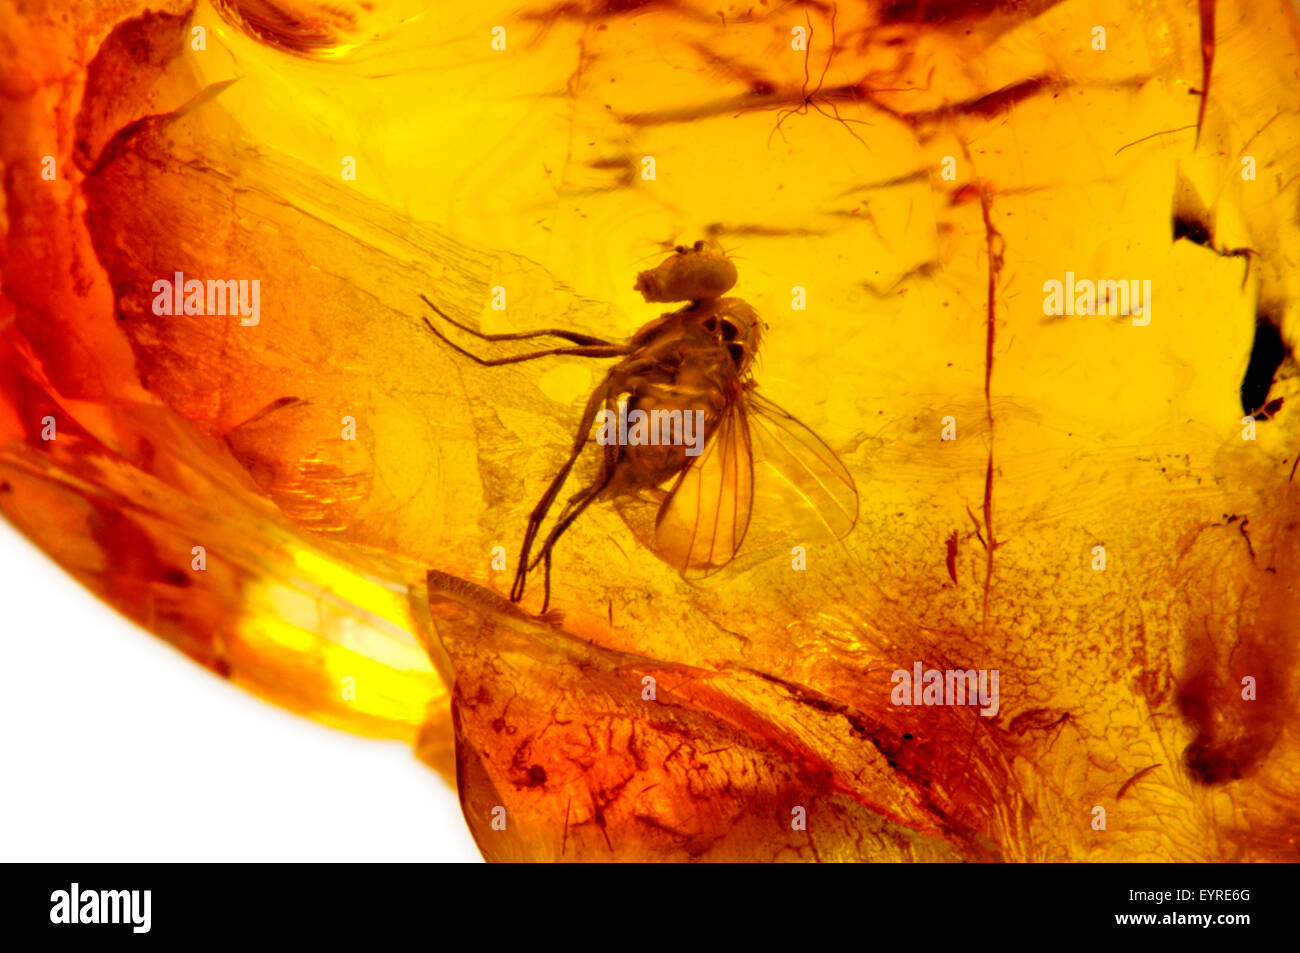 Fly préhistorique (c40-50m ans) préservés dans l'ambre baltique de Kaliningrad region, Russie. 3-4mm de long de l'insecte Banque D'Images